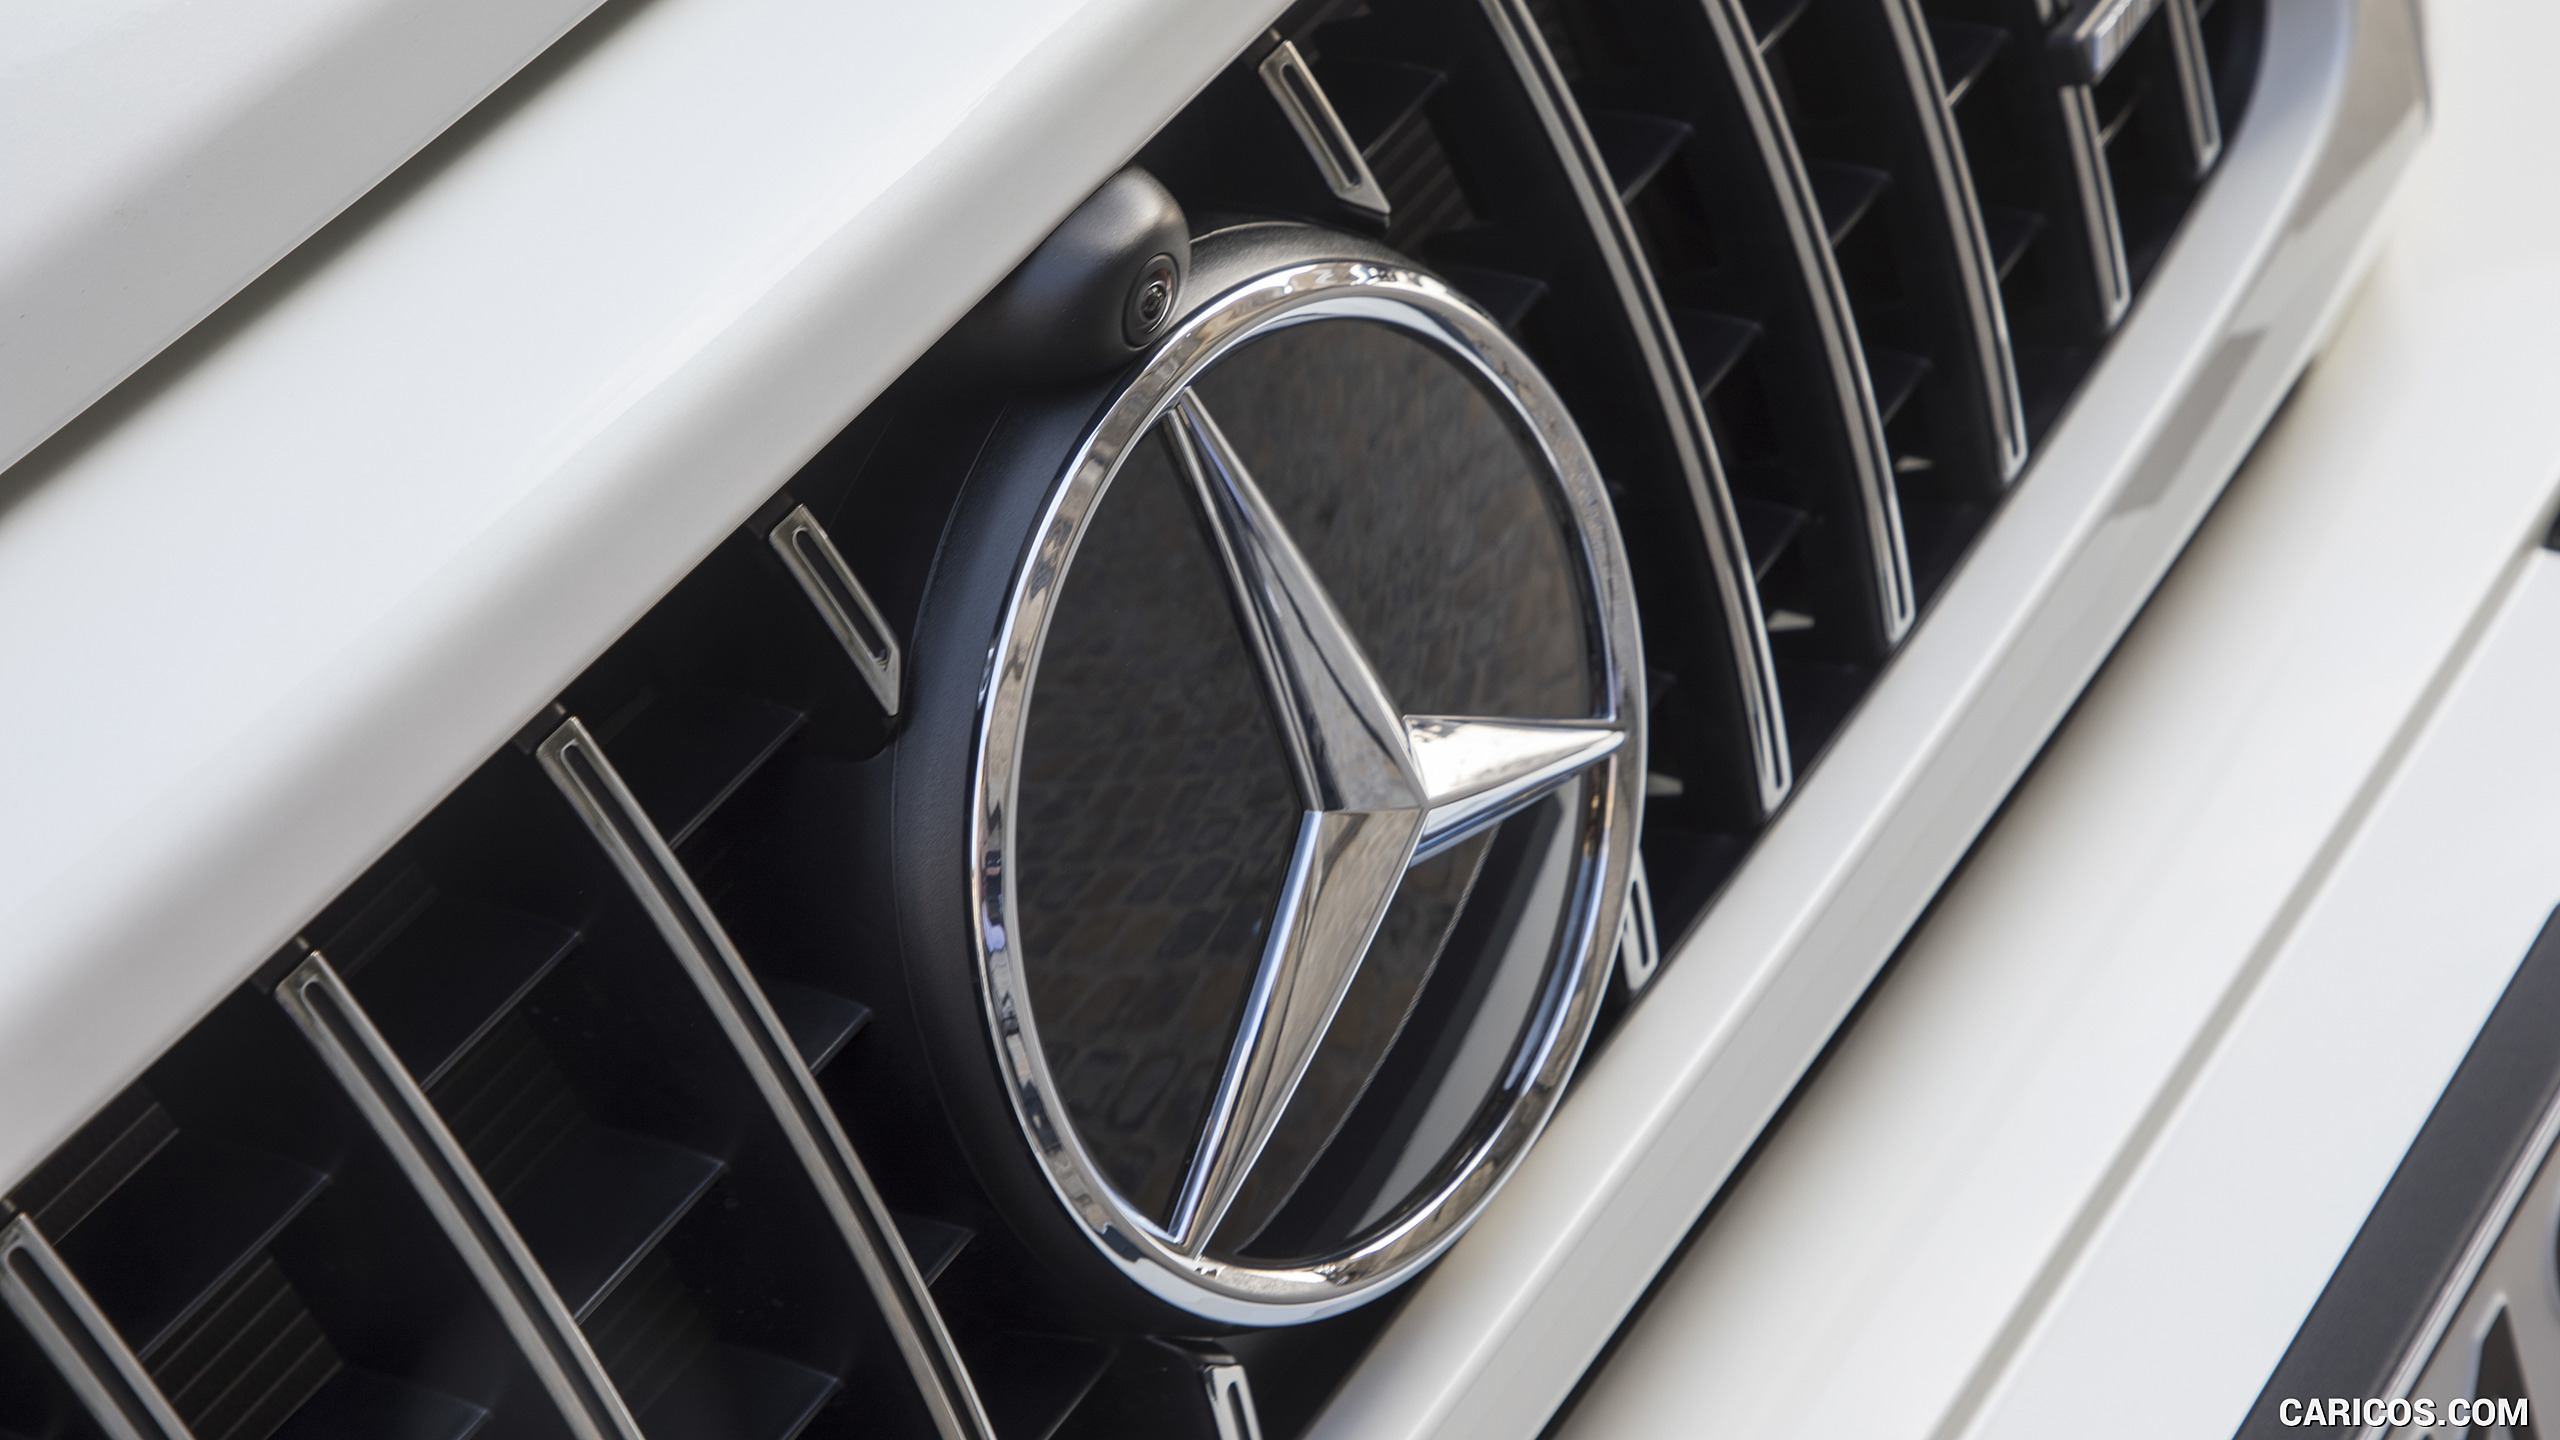 2019 Mercedes-AMG G63 (Color: Designo Diamond White Bright) - Grille, #101 of 452